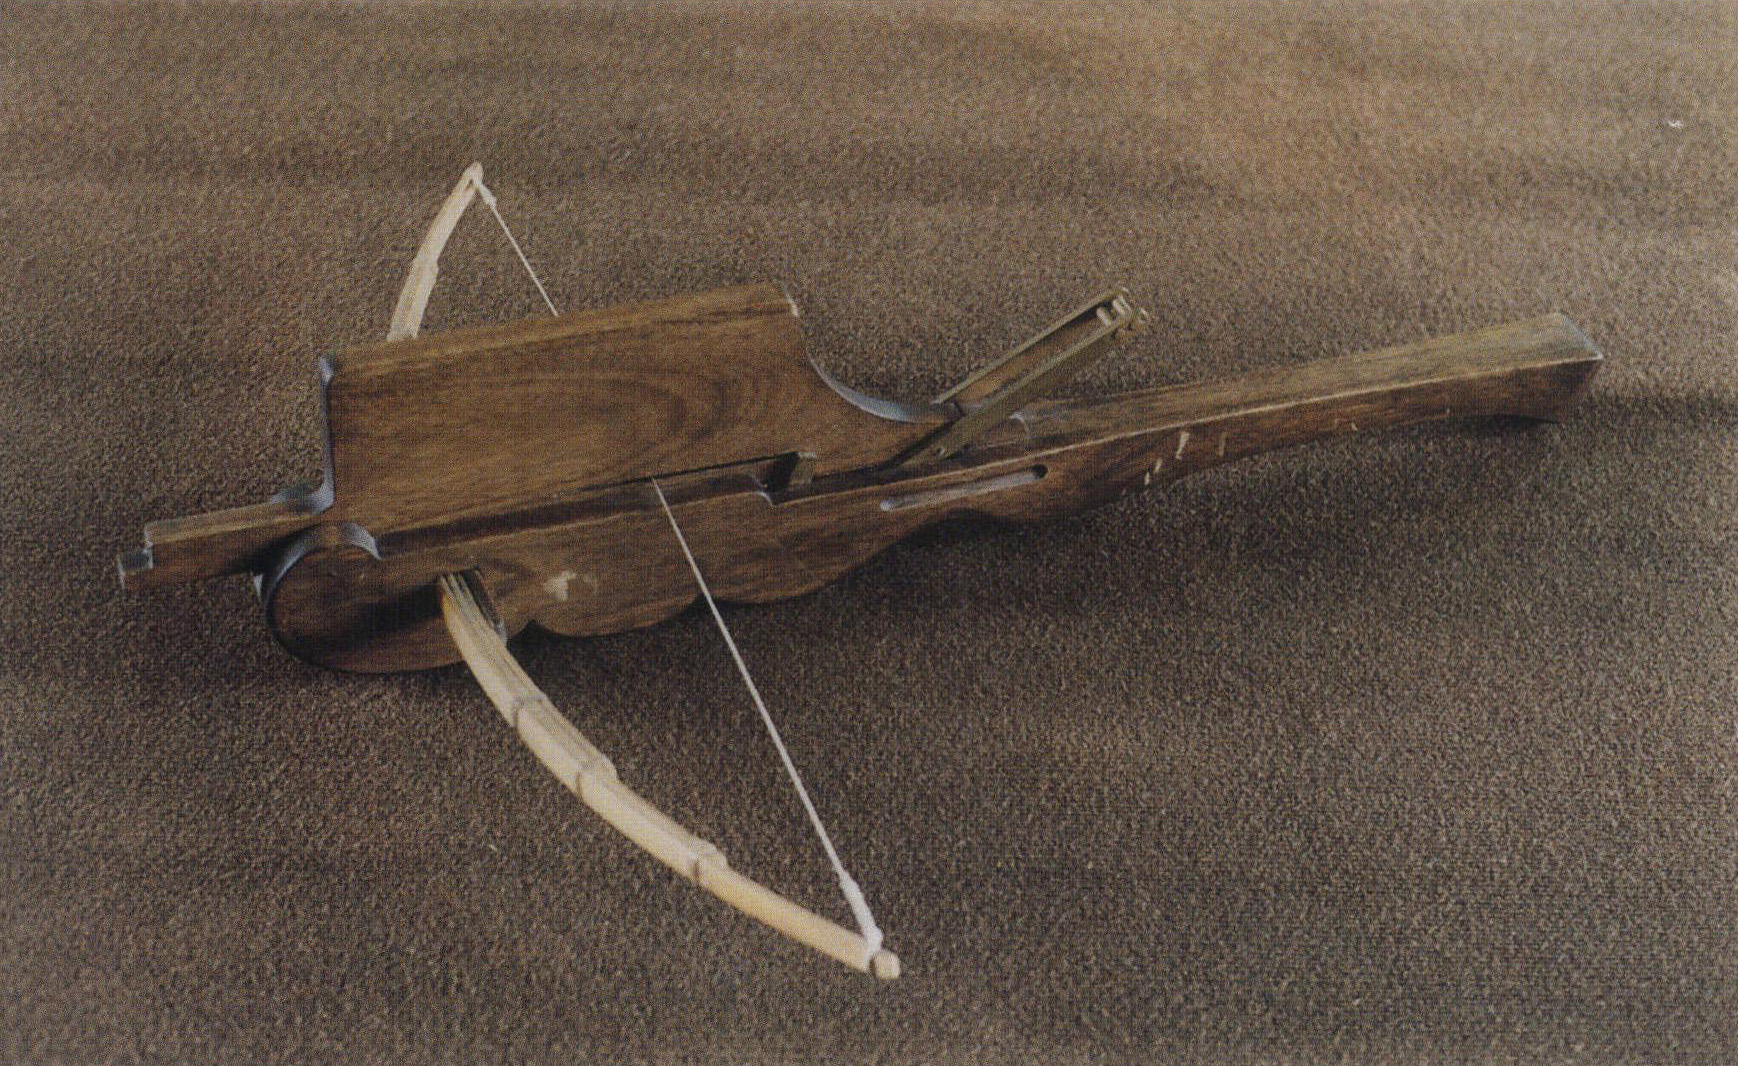 连弩(模型)，传说诸葛亮发明。它带有箭匣，内装箭10支，可连续射击